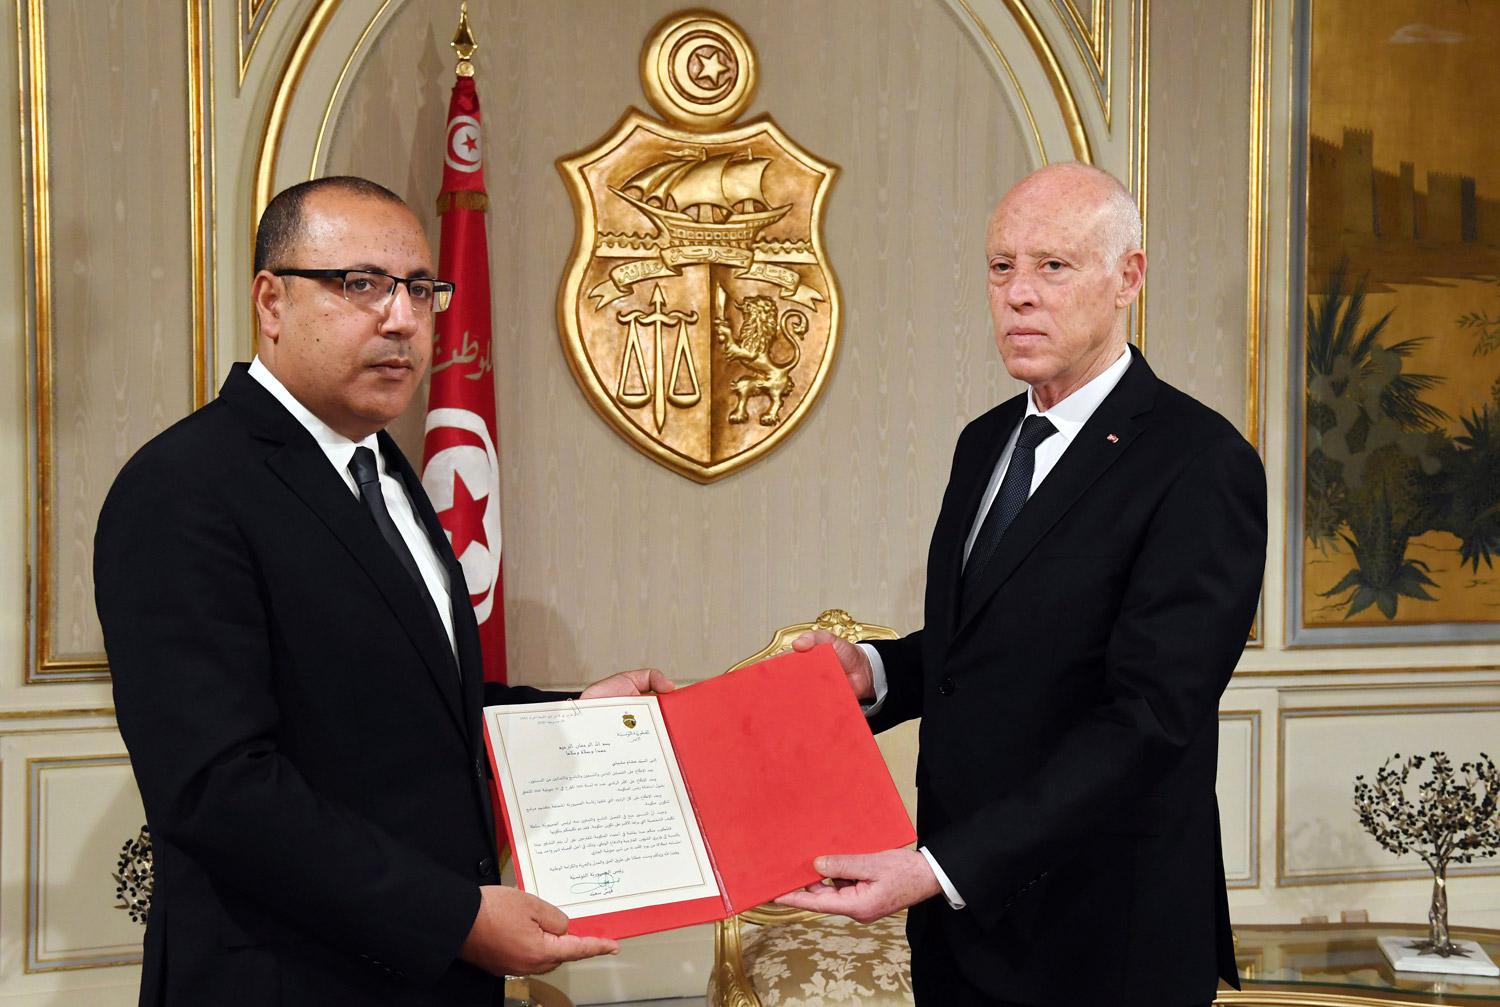 وضوح قيس سعيد يكسبه ثقة التونسيين أكثر